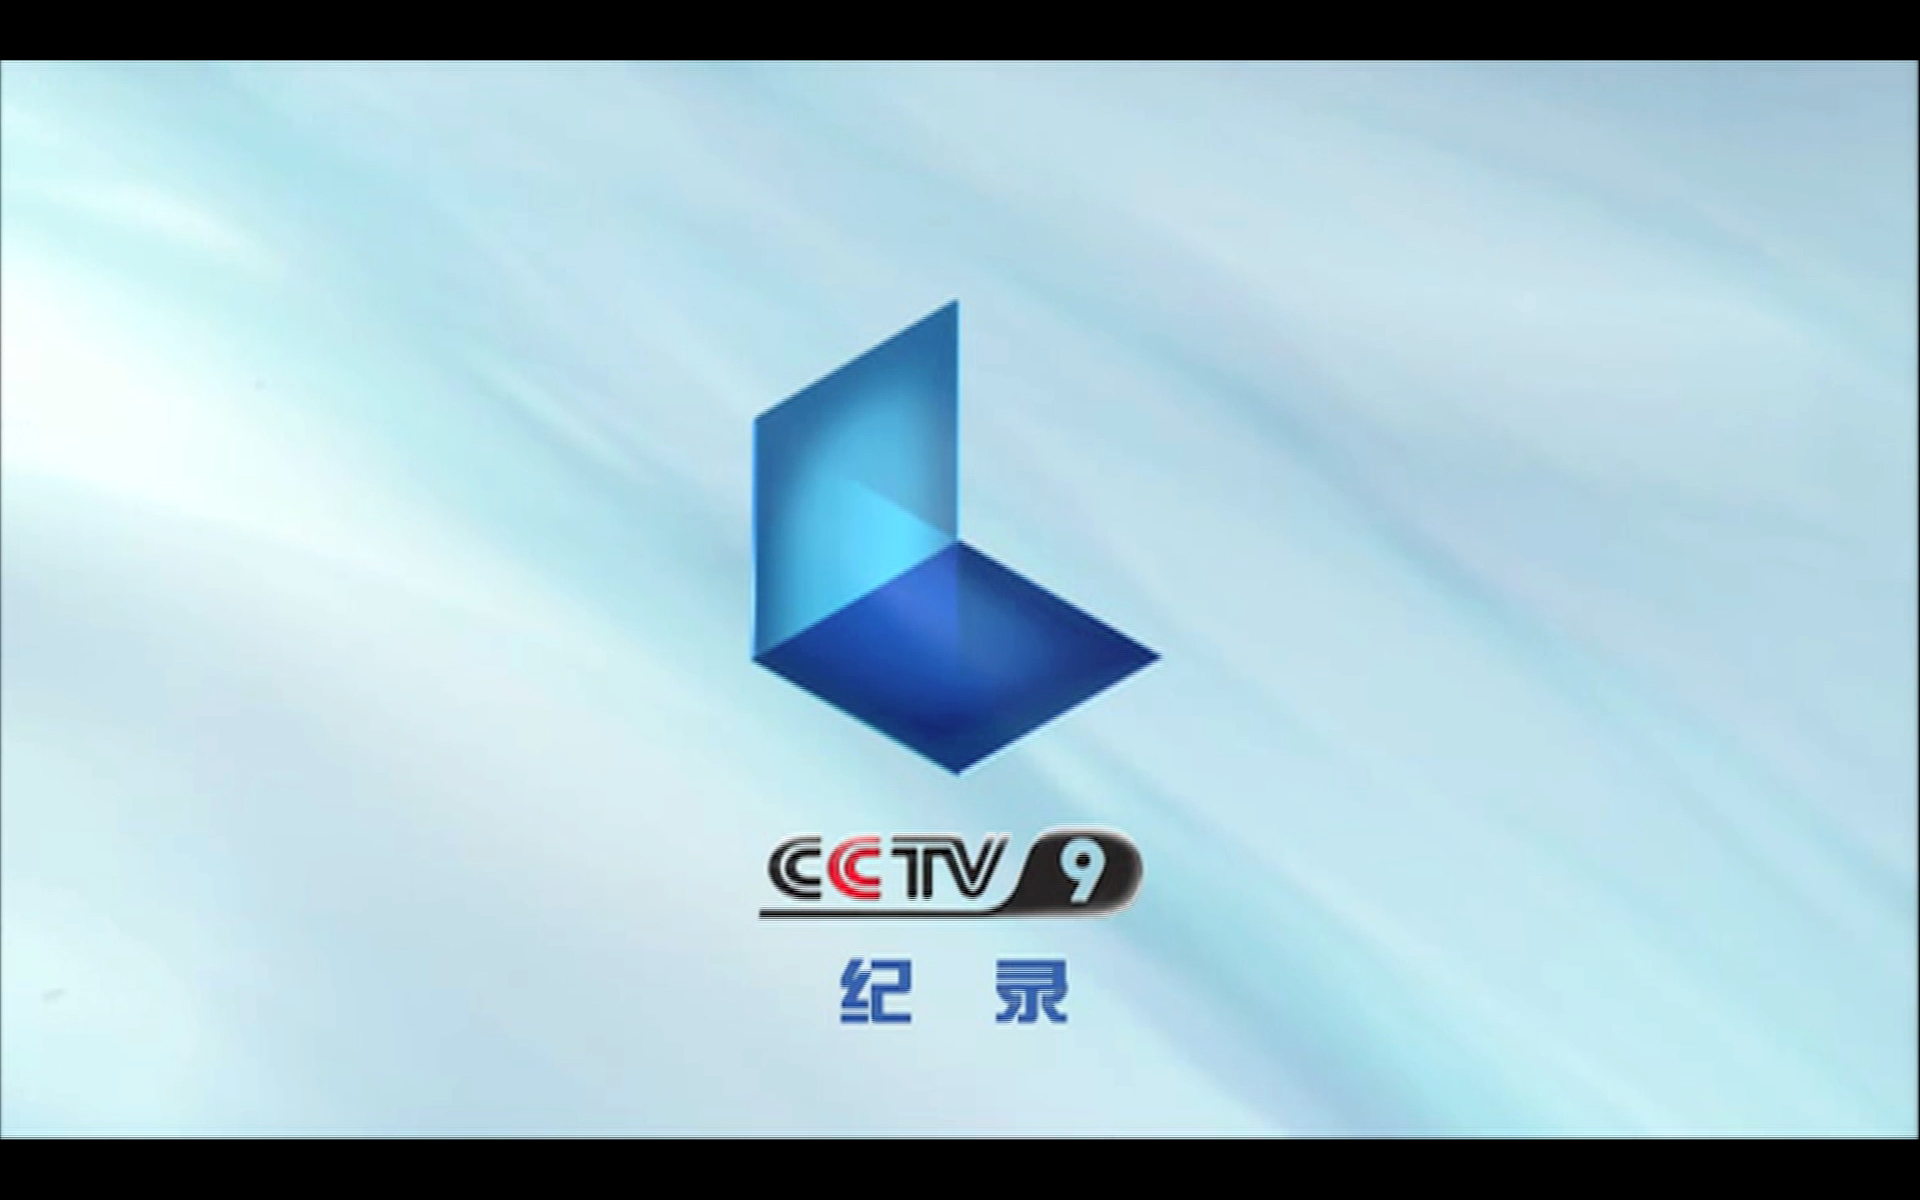 cctv 9纪录频道图片